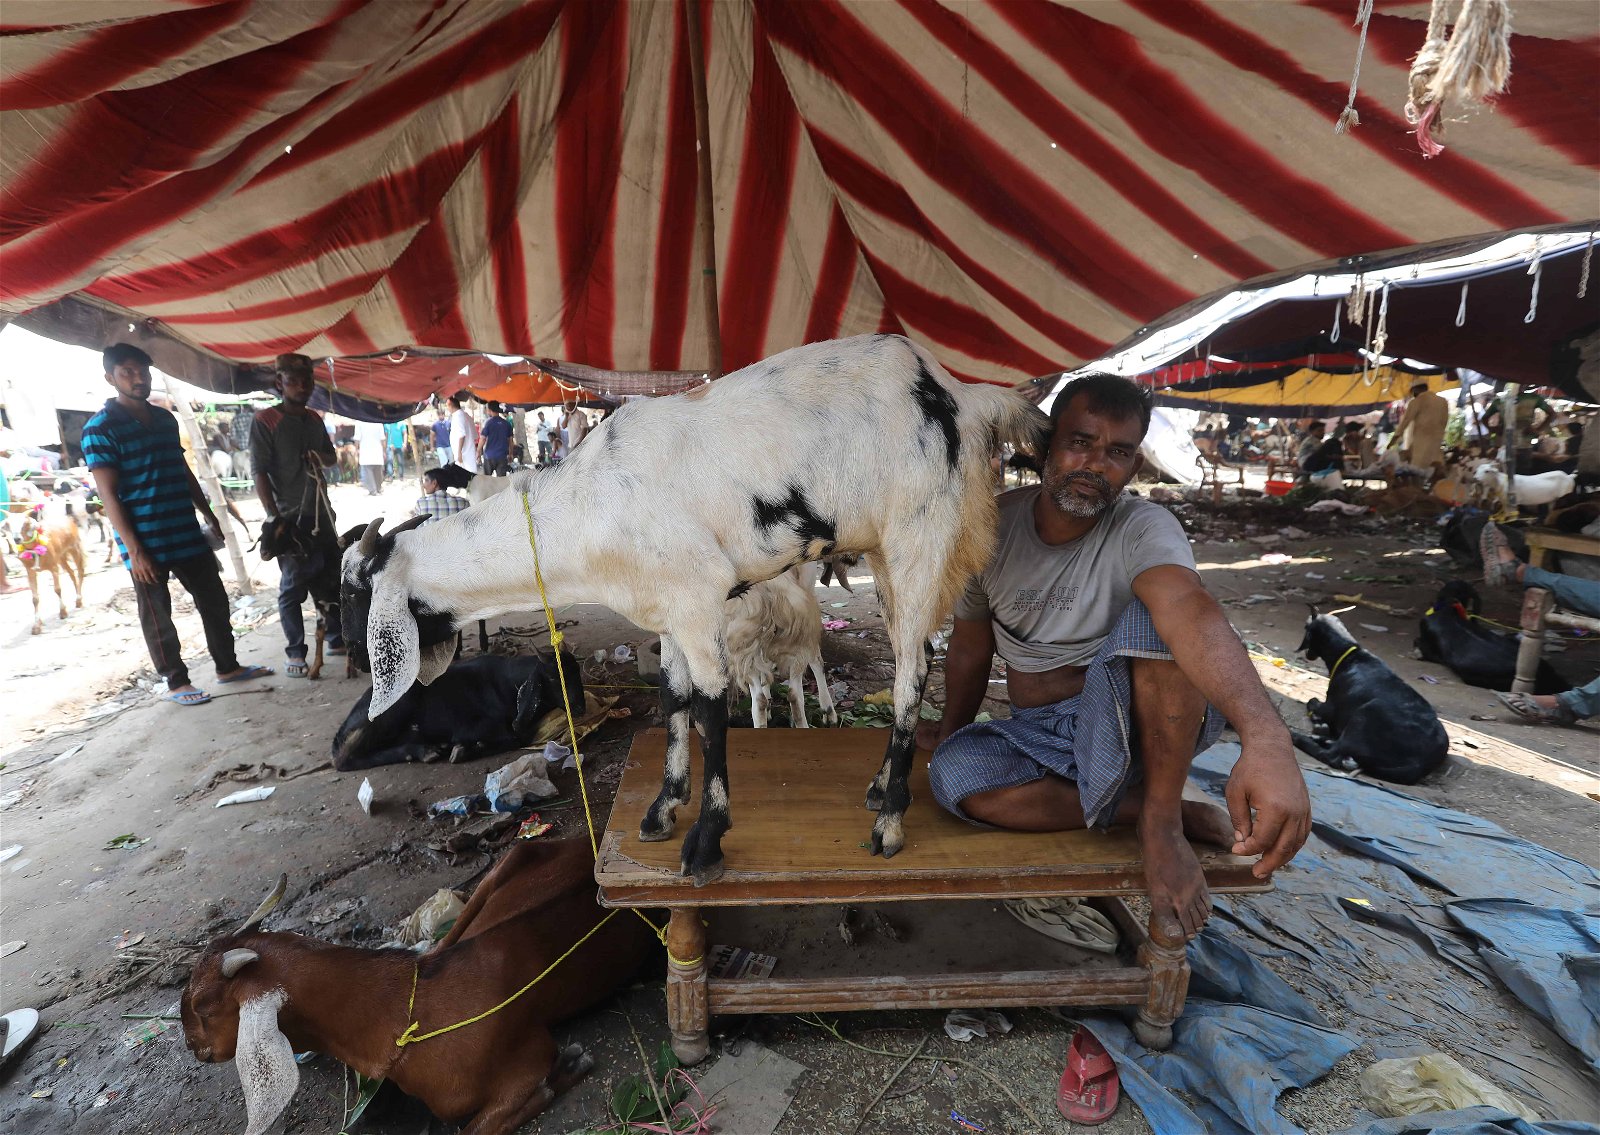 Een man zit naast een geit op tafel in een tent in India.